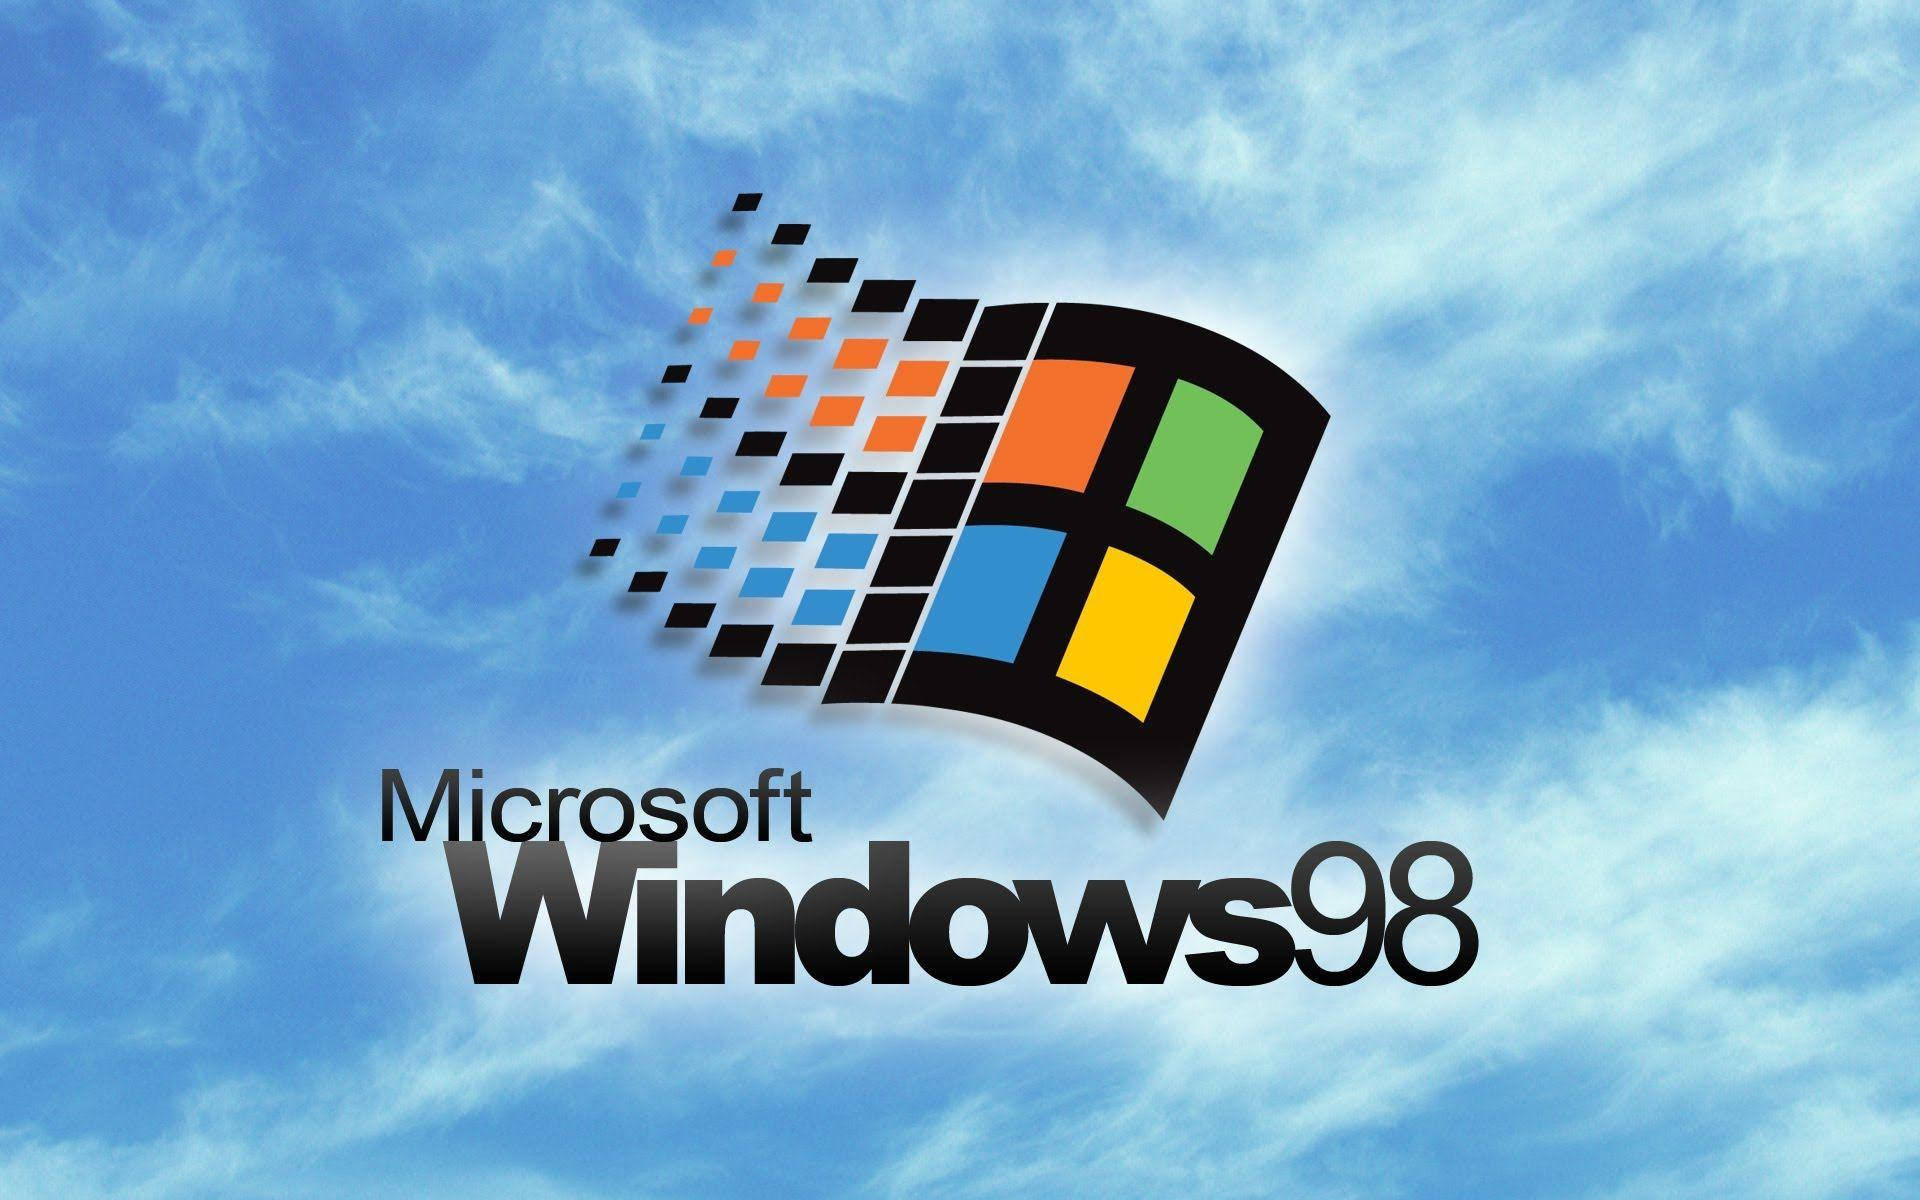 Windows 98 Built For The 90s Wallpaper